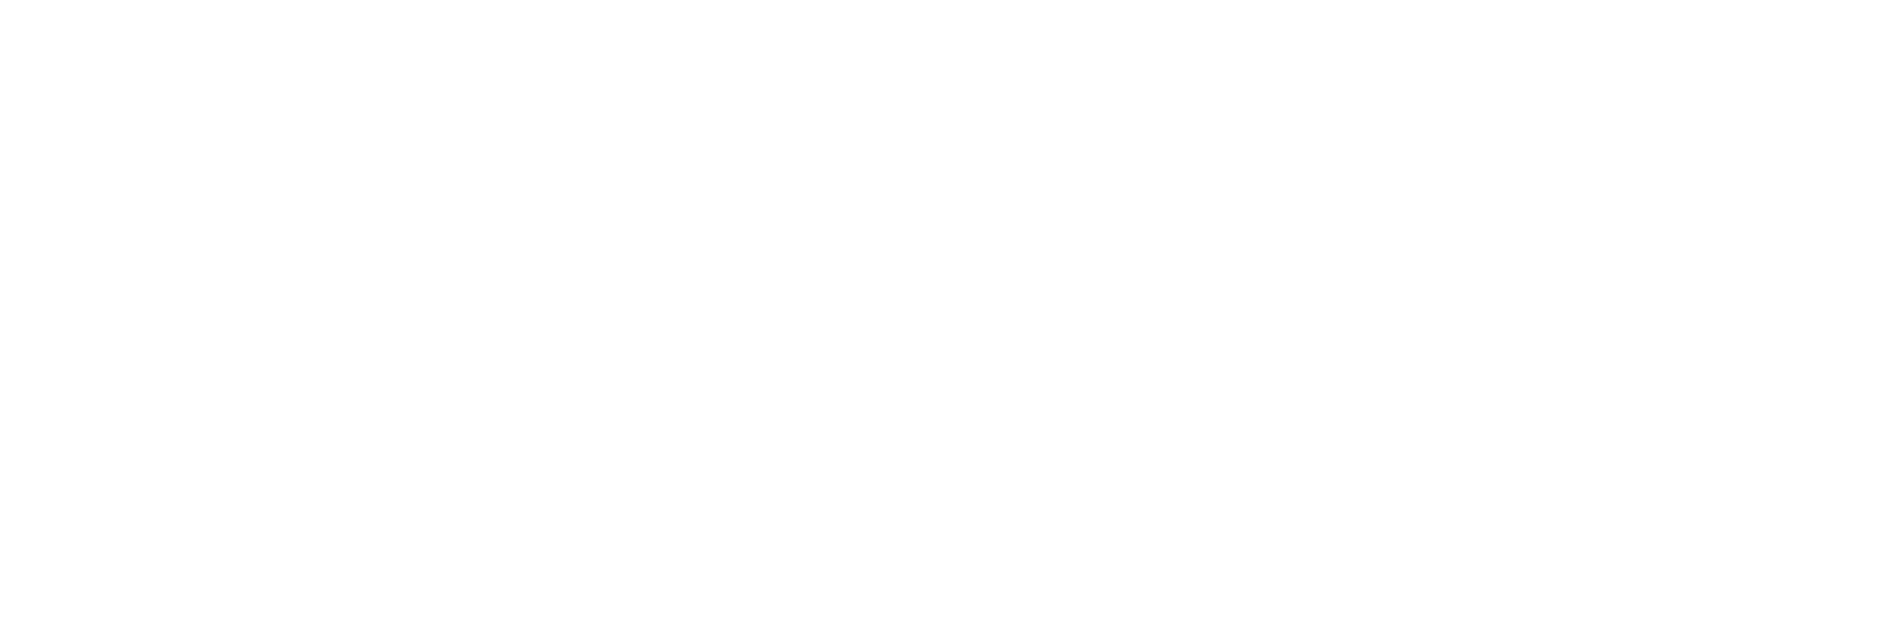 Logo de la Conférence des Grandes Écoles sans fond